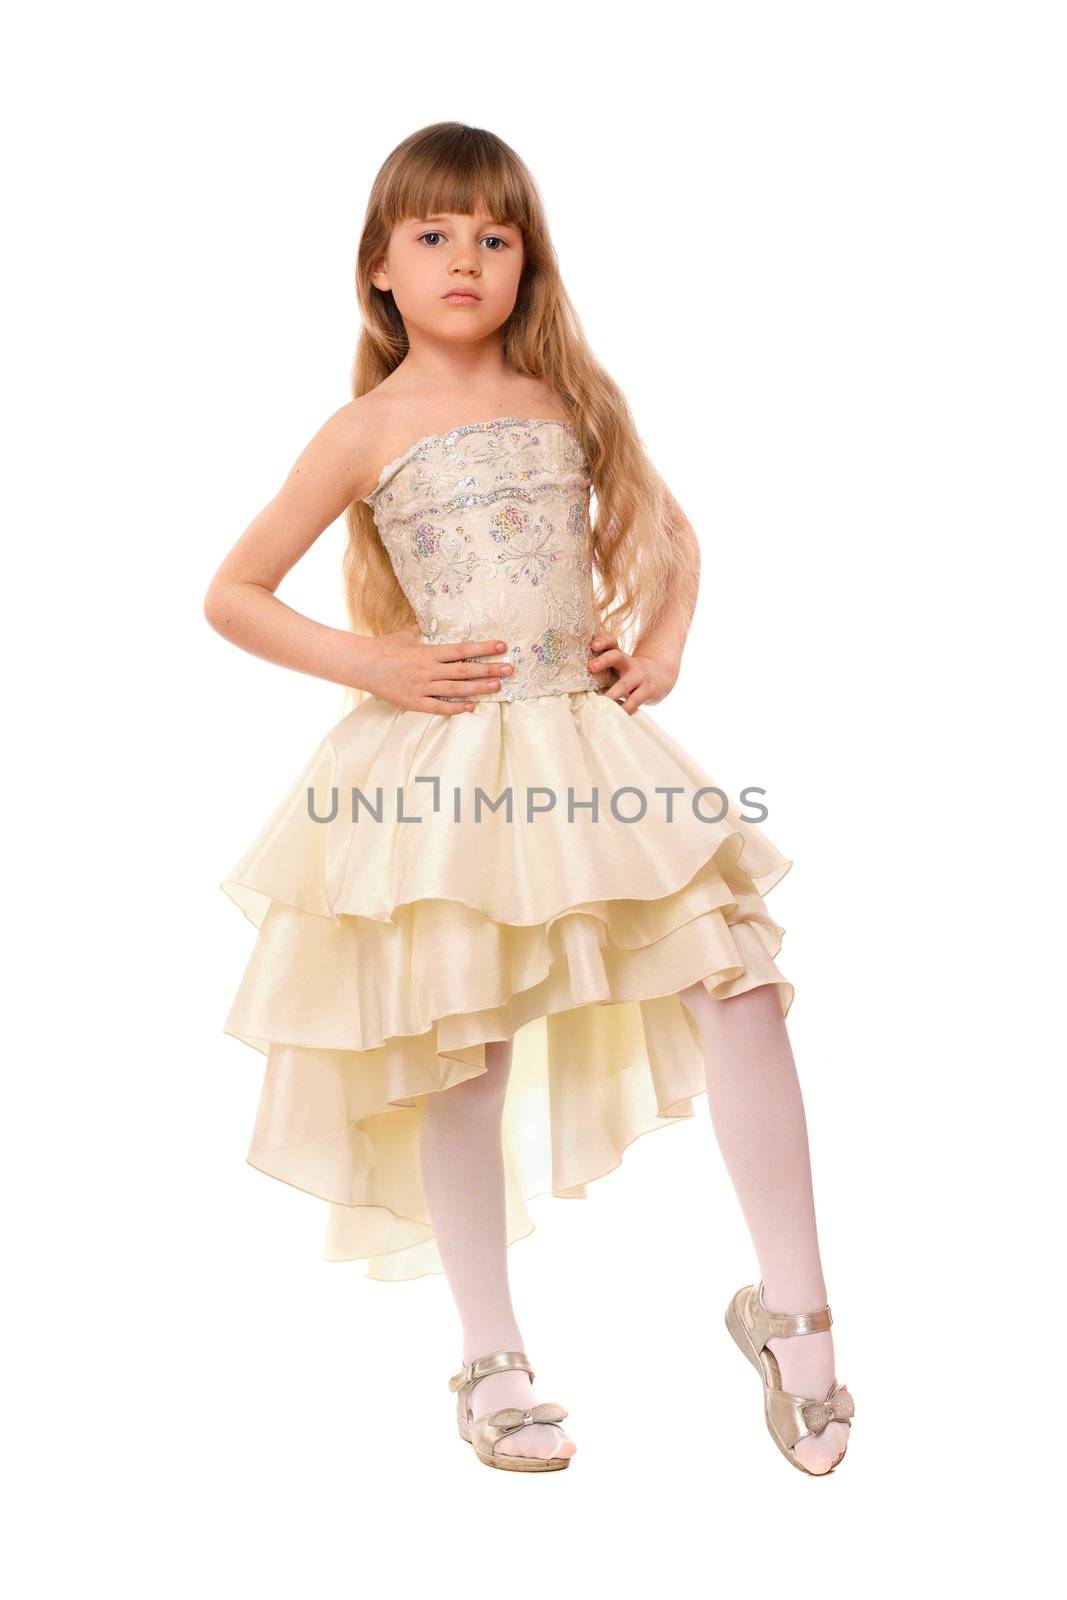 Pretty little girl in a beige dress by acidgrey